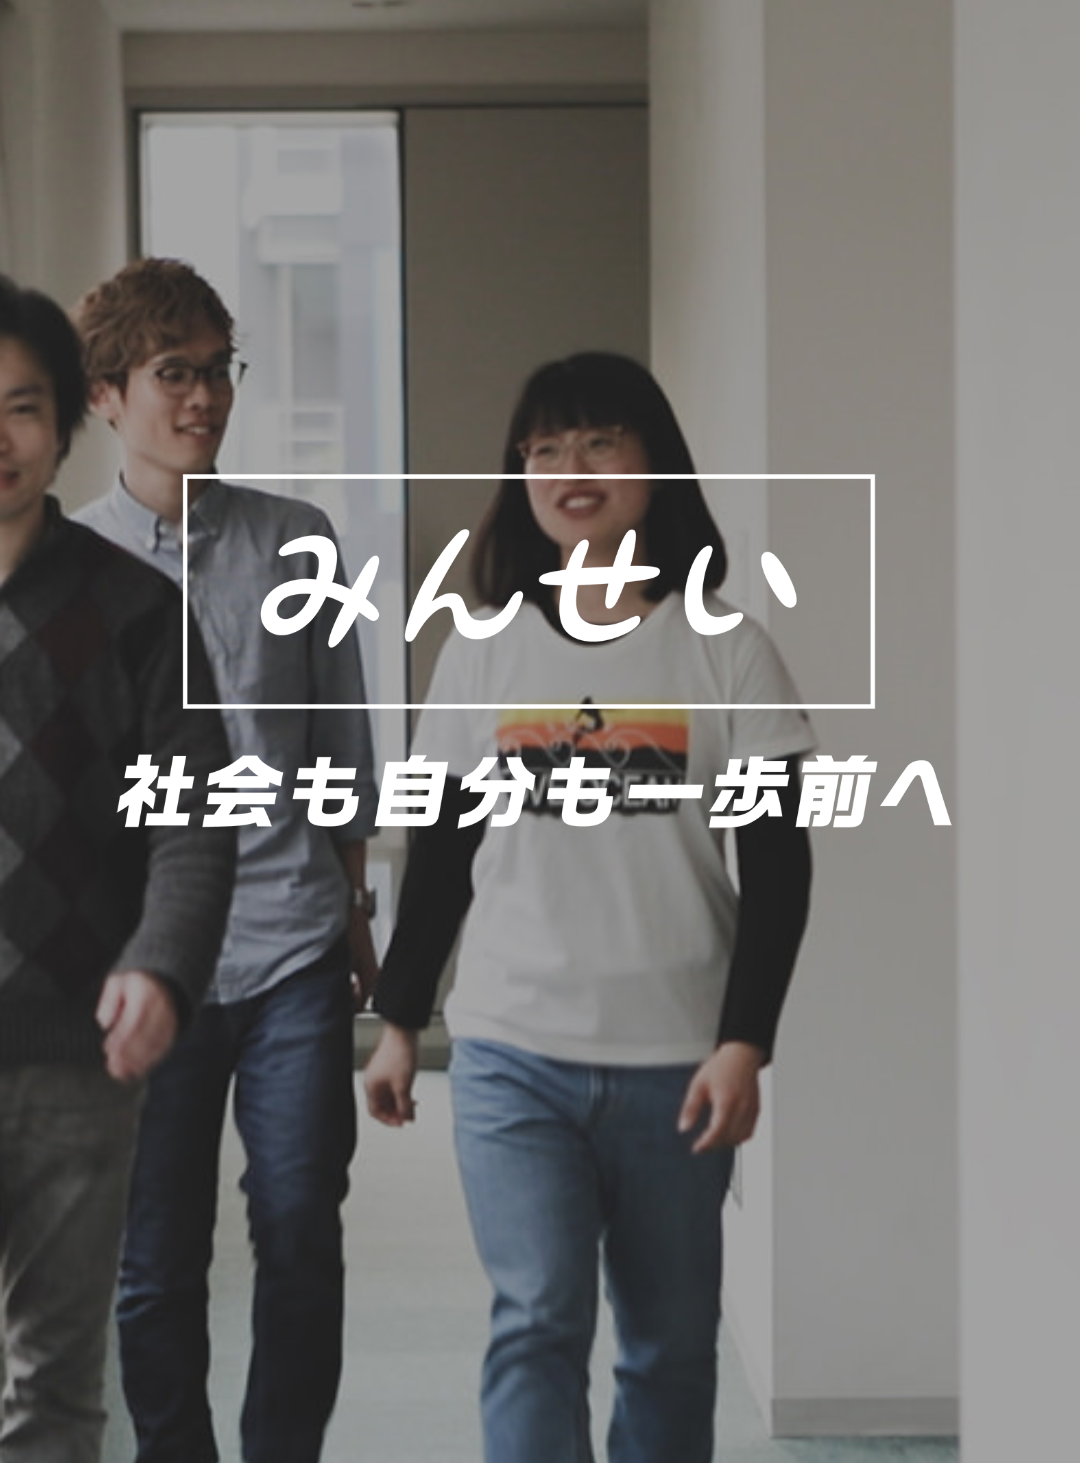 今の日本の「気になる」「何とかしたい」こと、一緒に学んで声を上げていきませんか？15歳～30歳のが加入できる運動組織です。